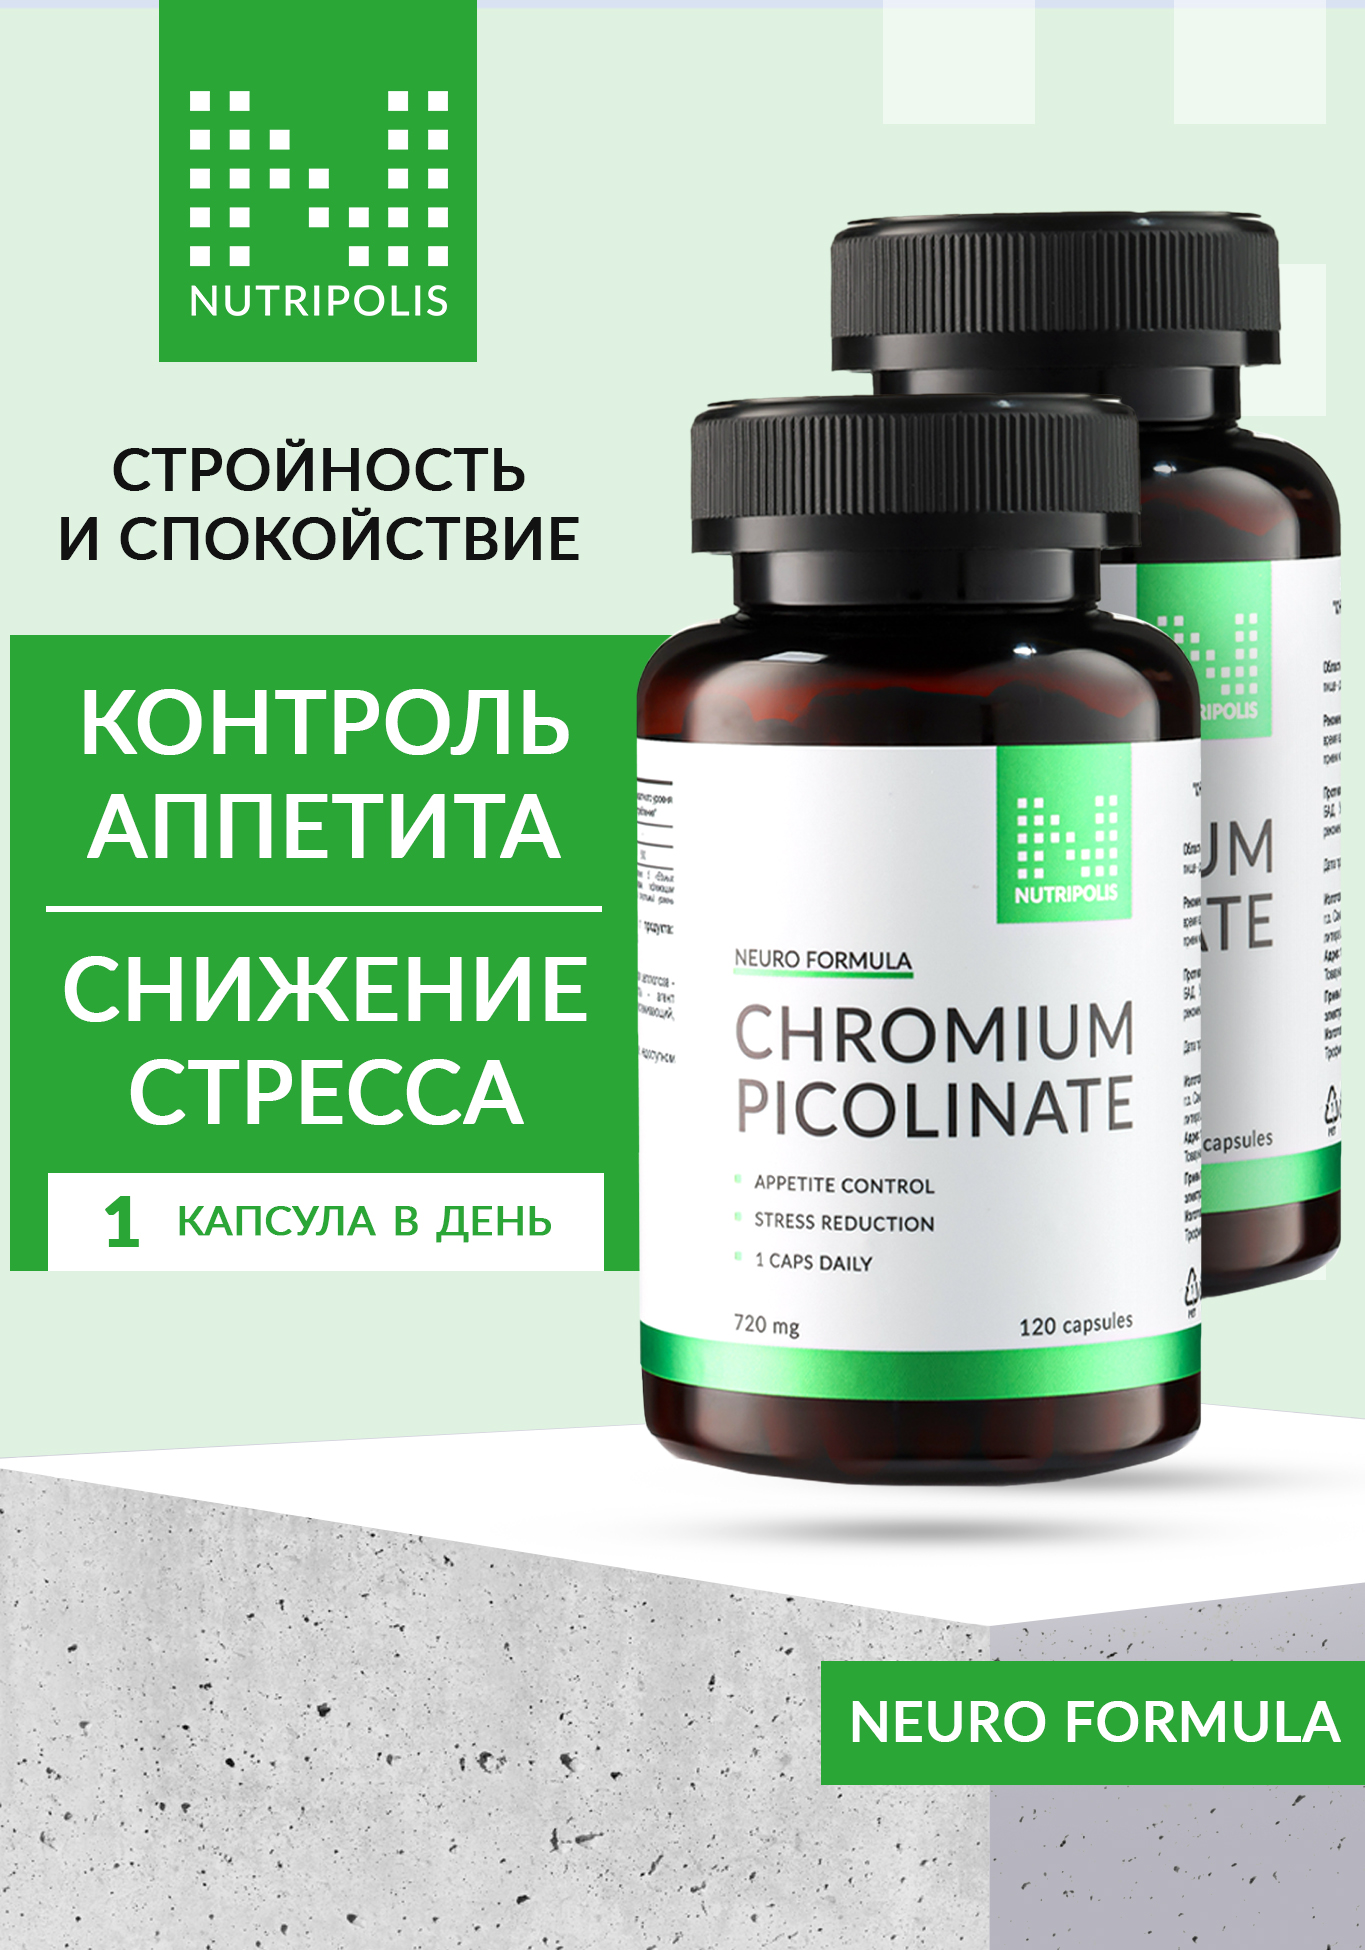 Chromium picolinate (Пиколинат хрома), 2 шт. NUTRIPOLIS